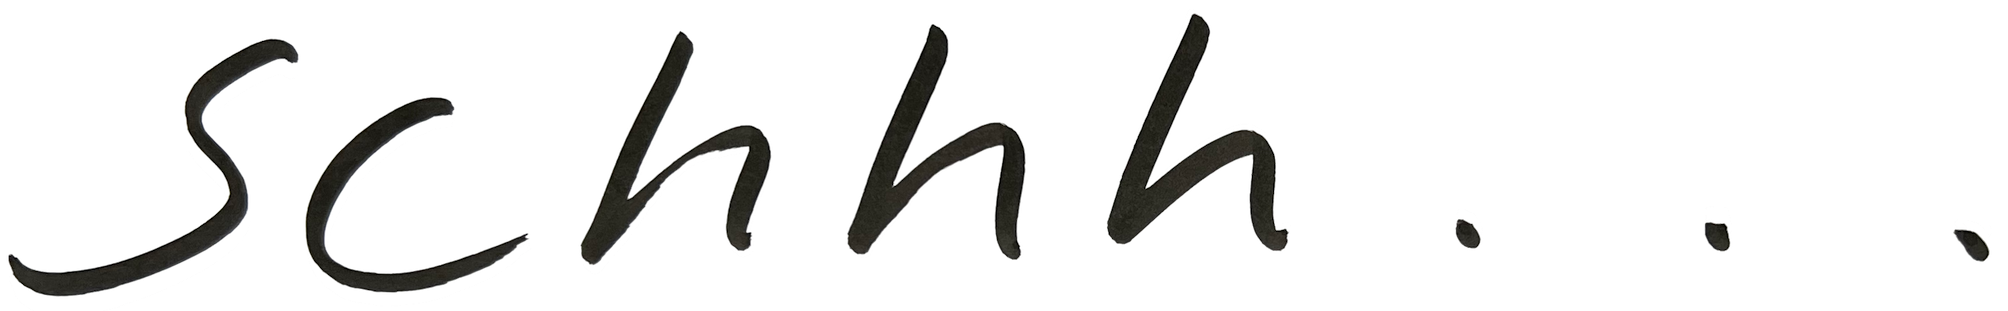 schhh logo